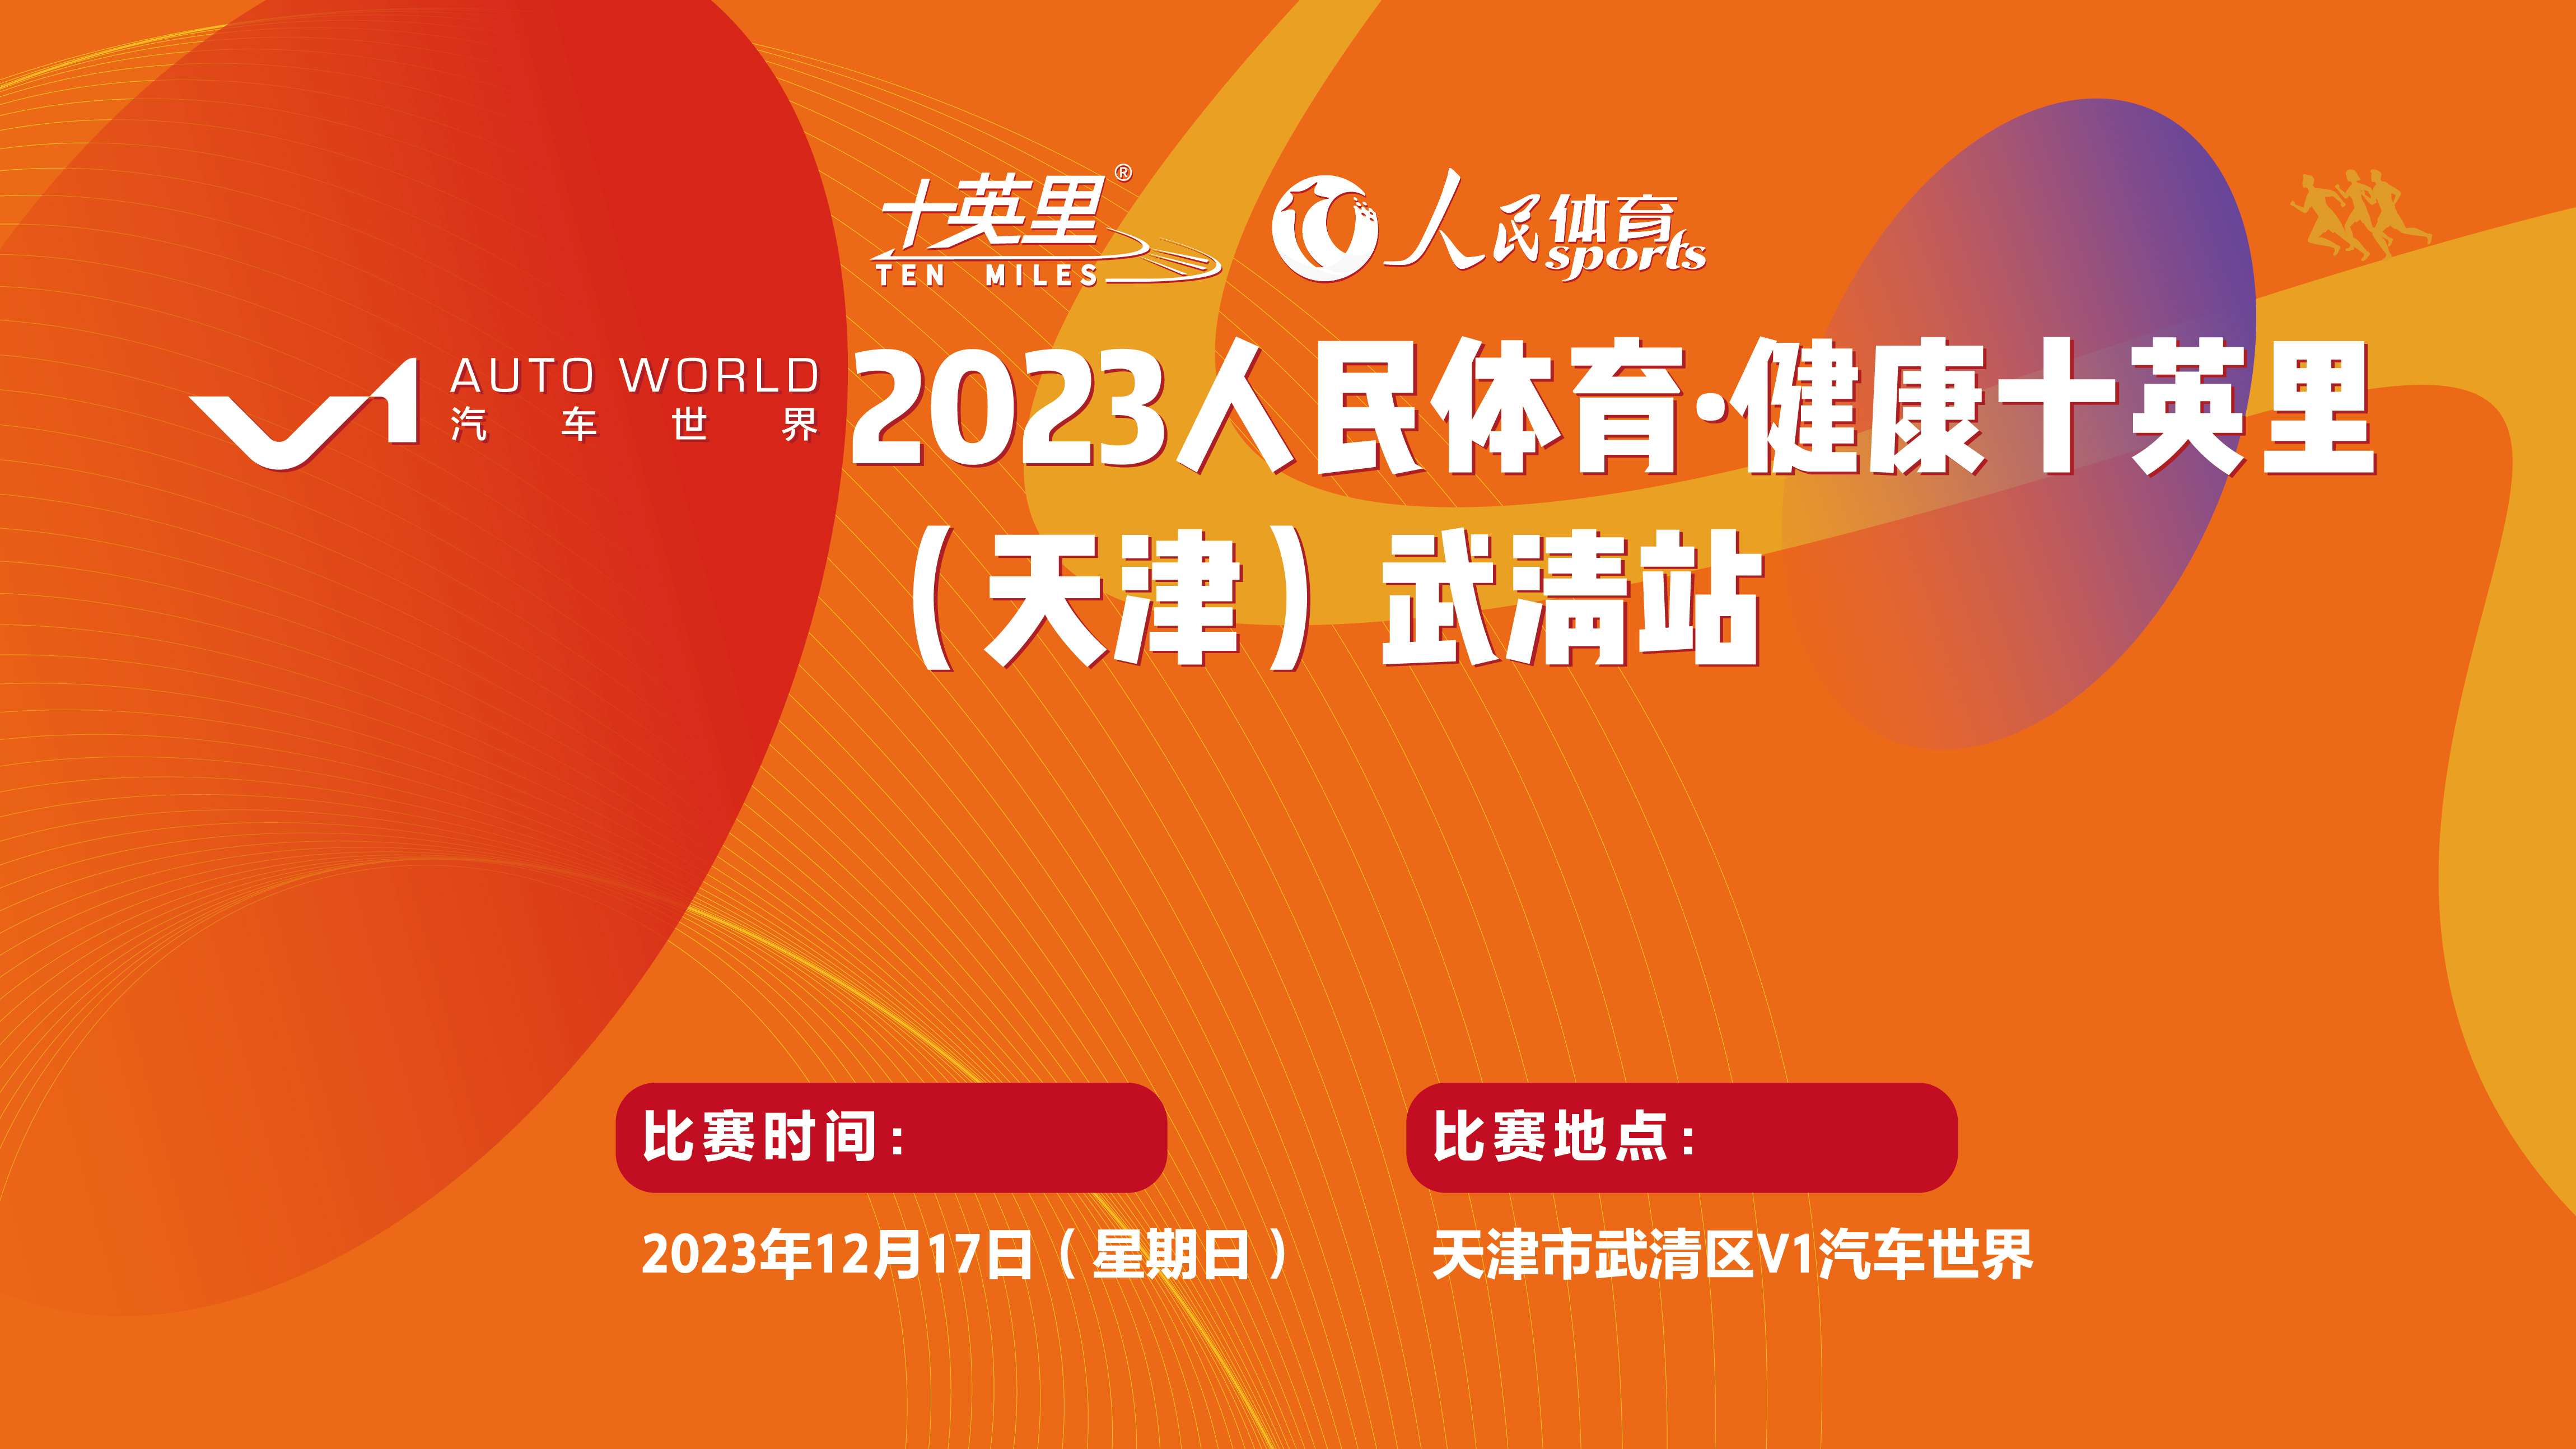 健康中国 体育力量  V1汽车世界 2023人民体育·健康十英里（天津）武清站